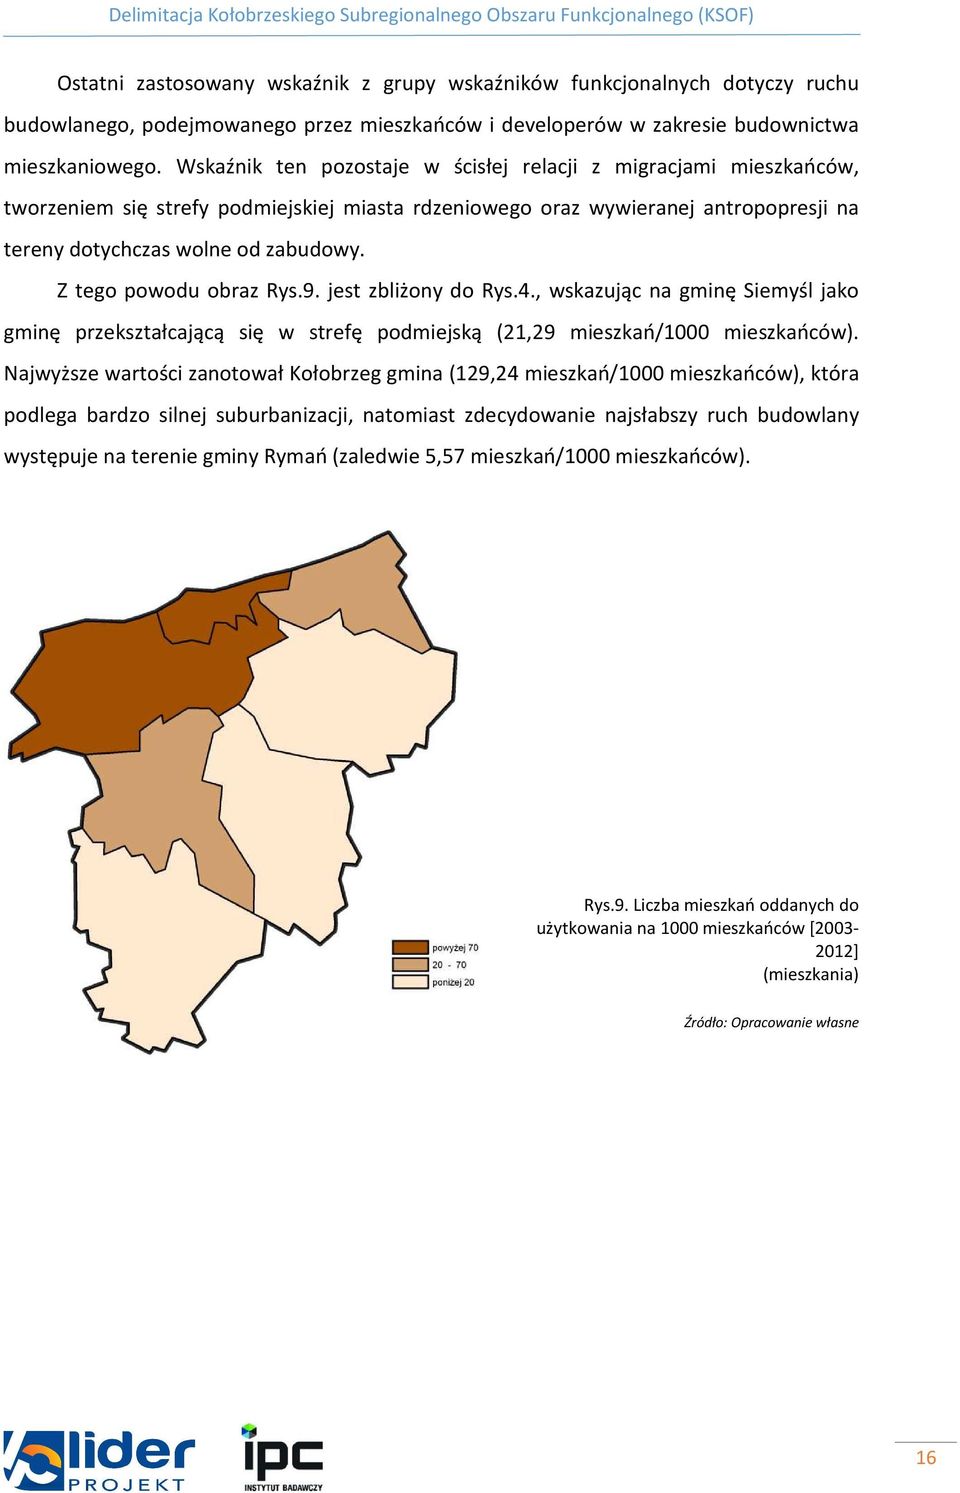 Z tego powodu obraz Rys.9. jest zbliżony do Rys.4., wskazując na gminę Siemyśl jako gminę przekształcającą się w strefę podmiejską (21,29 mieszkań/1000 mieszkańców).